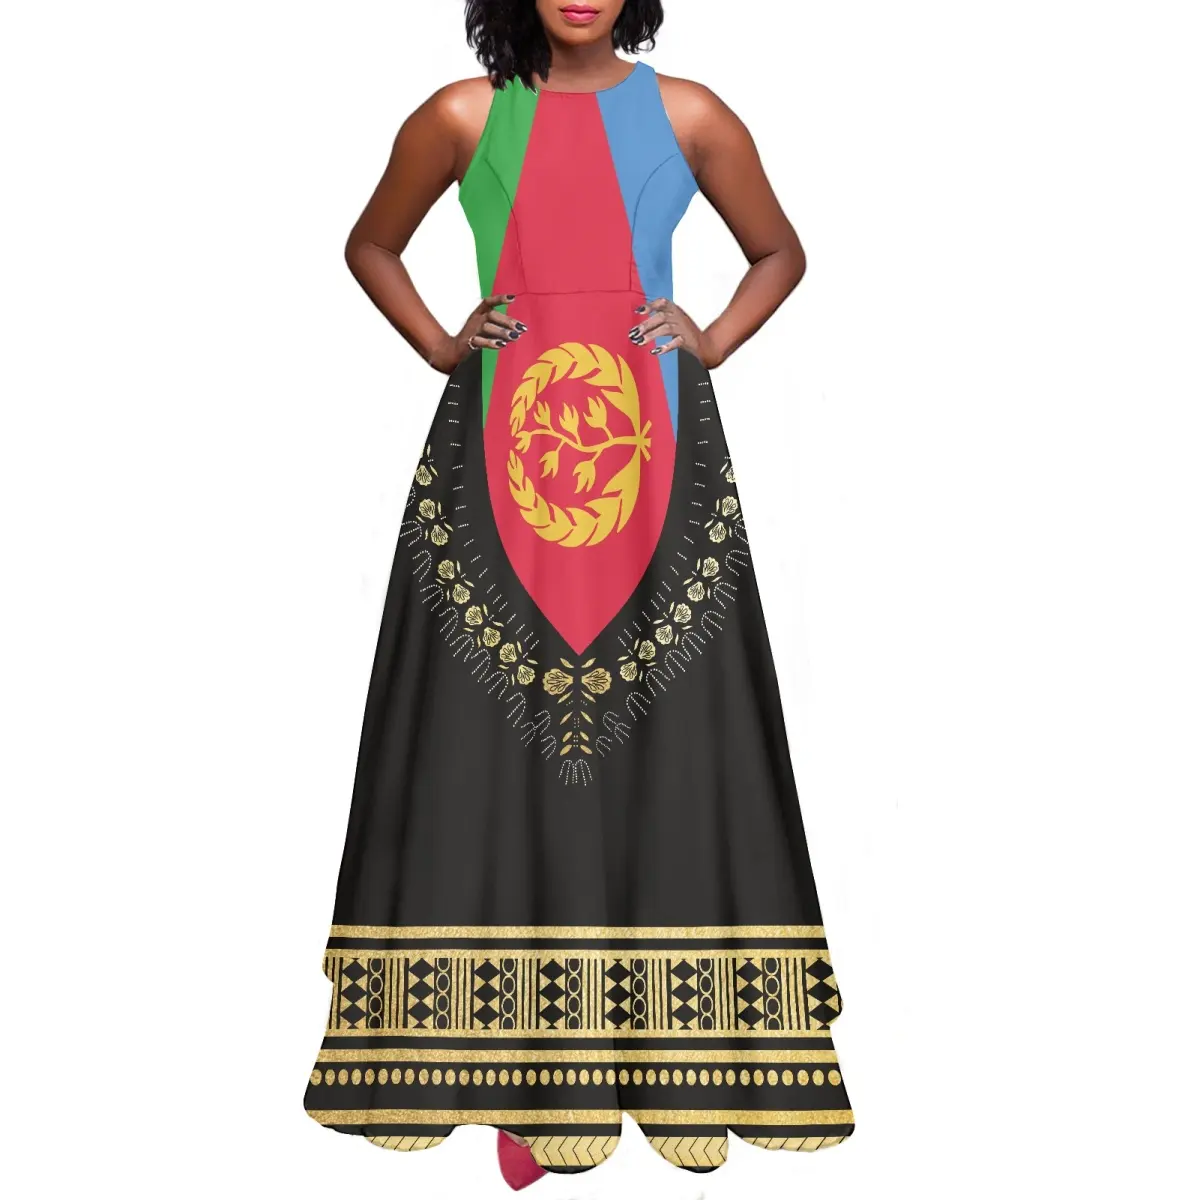 Hot Summer Black Maxi Logo personalizzato Eritrea abito lungo donna moda Casual abiti da sera eritreo alla rinfusa elegante senza maniche